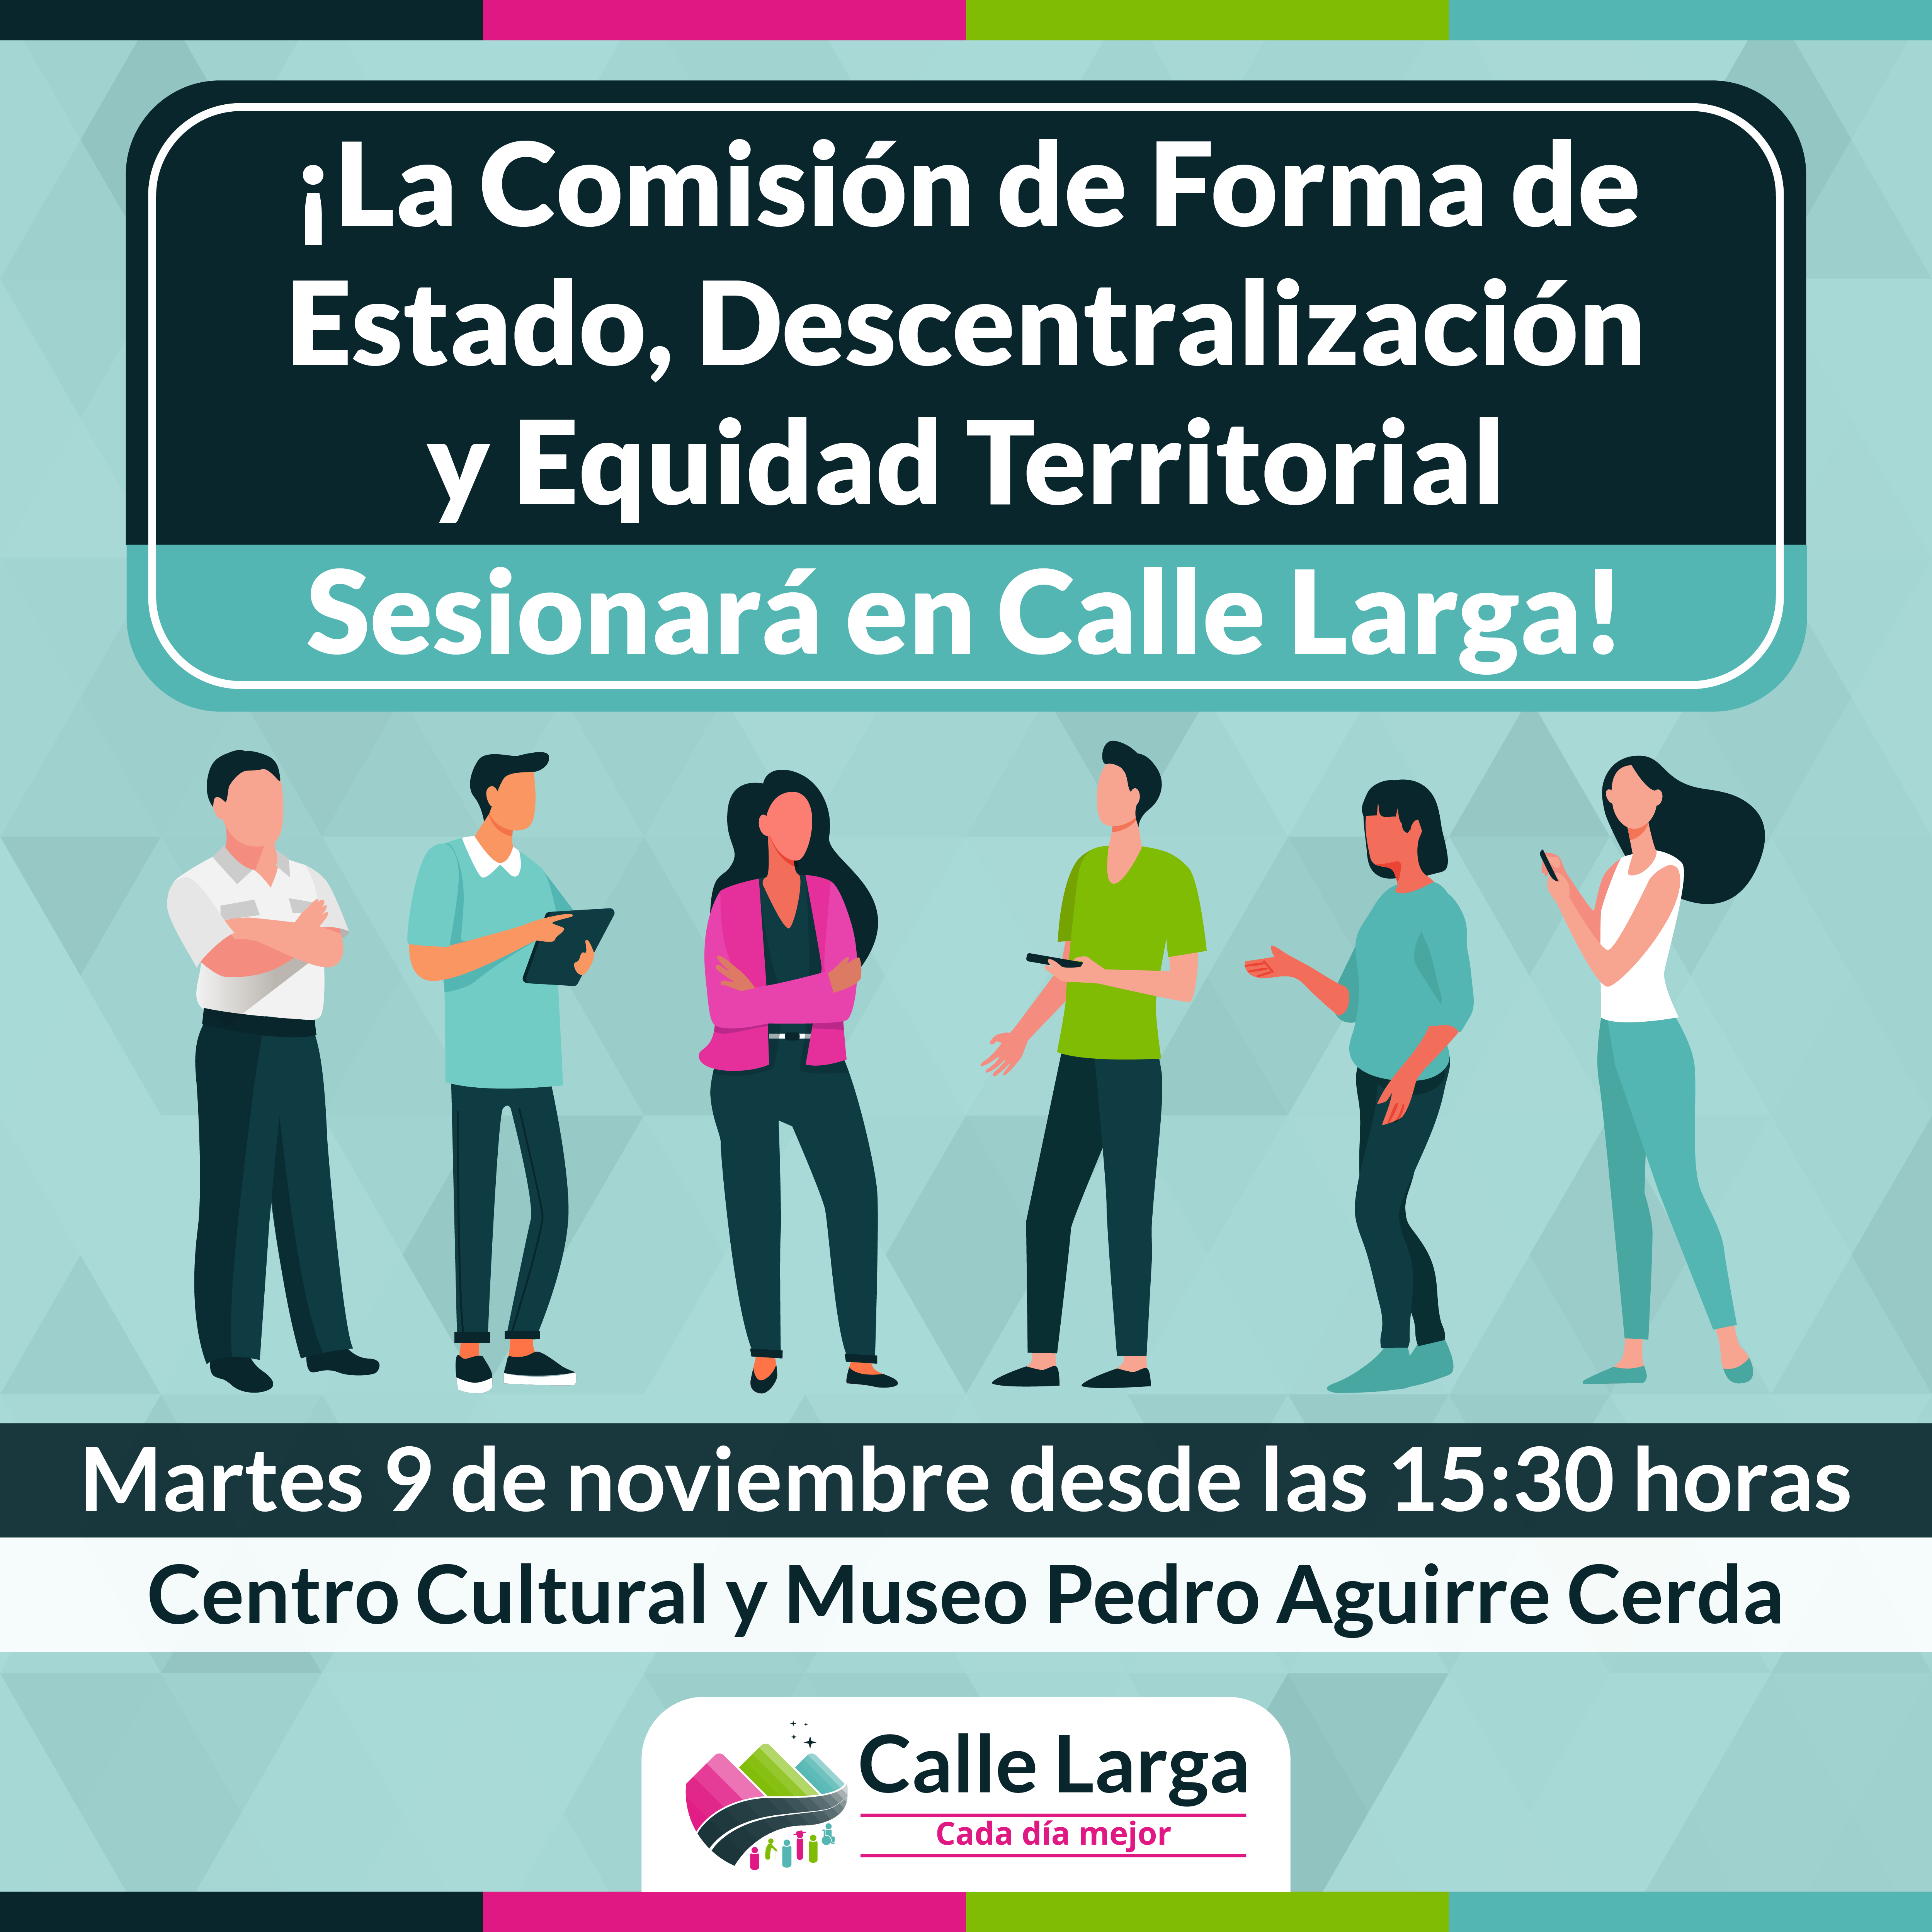 CONSTITUYENTE: Calle Larga será una de las primeras comunas del país en las que sesionará la Convención Constitucional fuera de Santiago